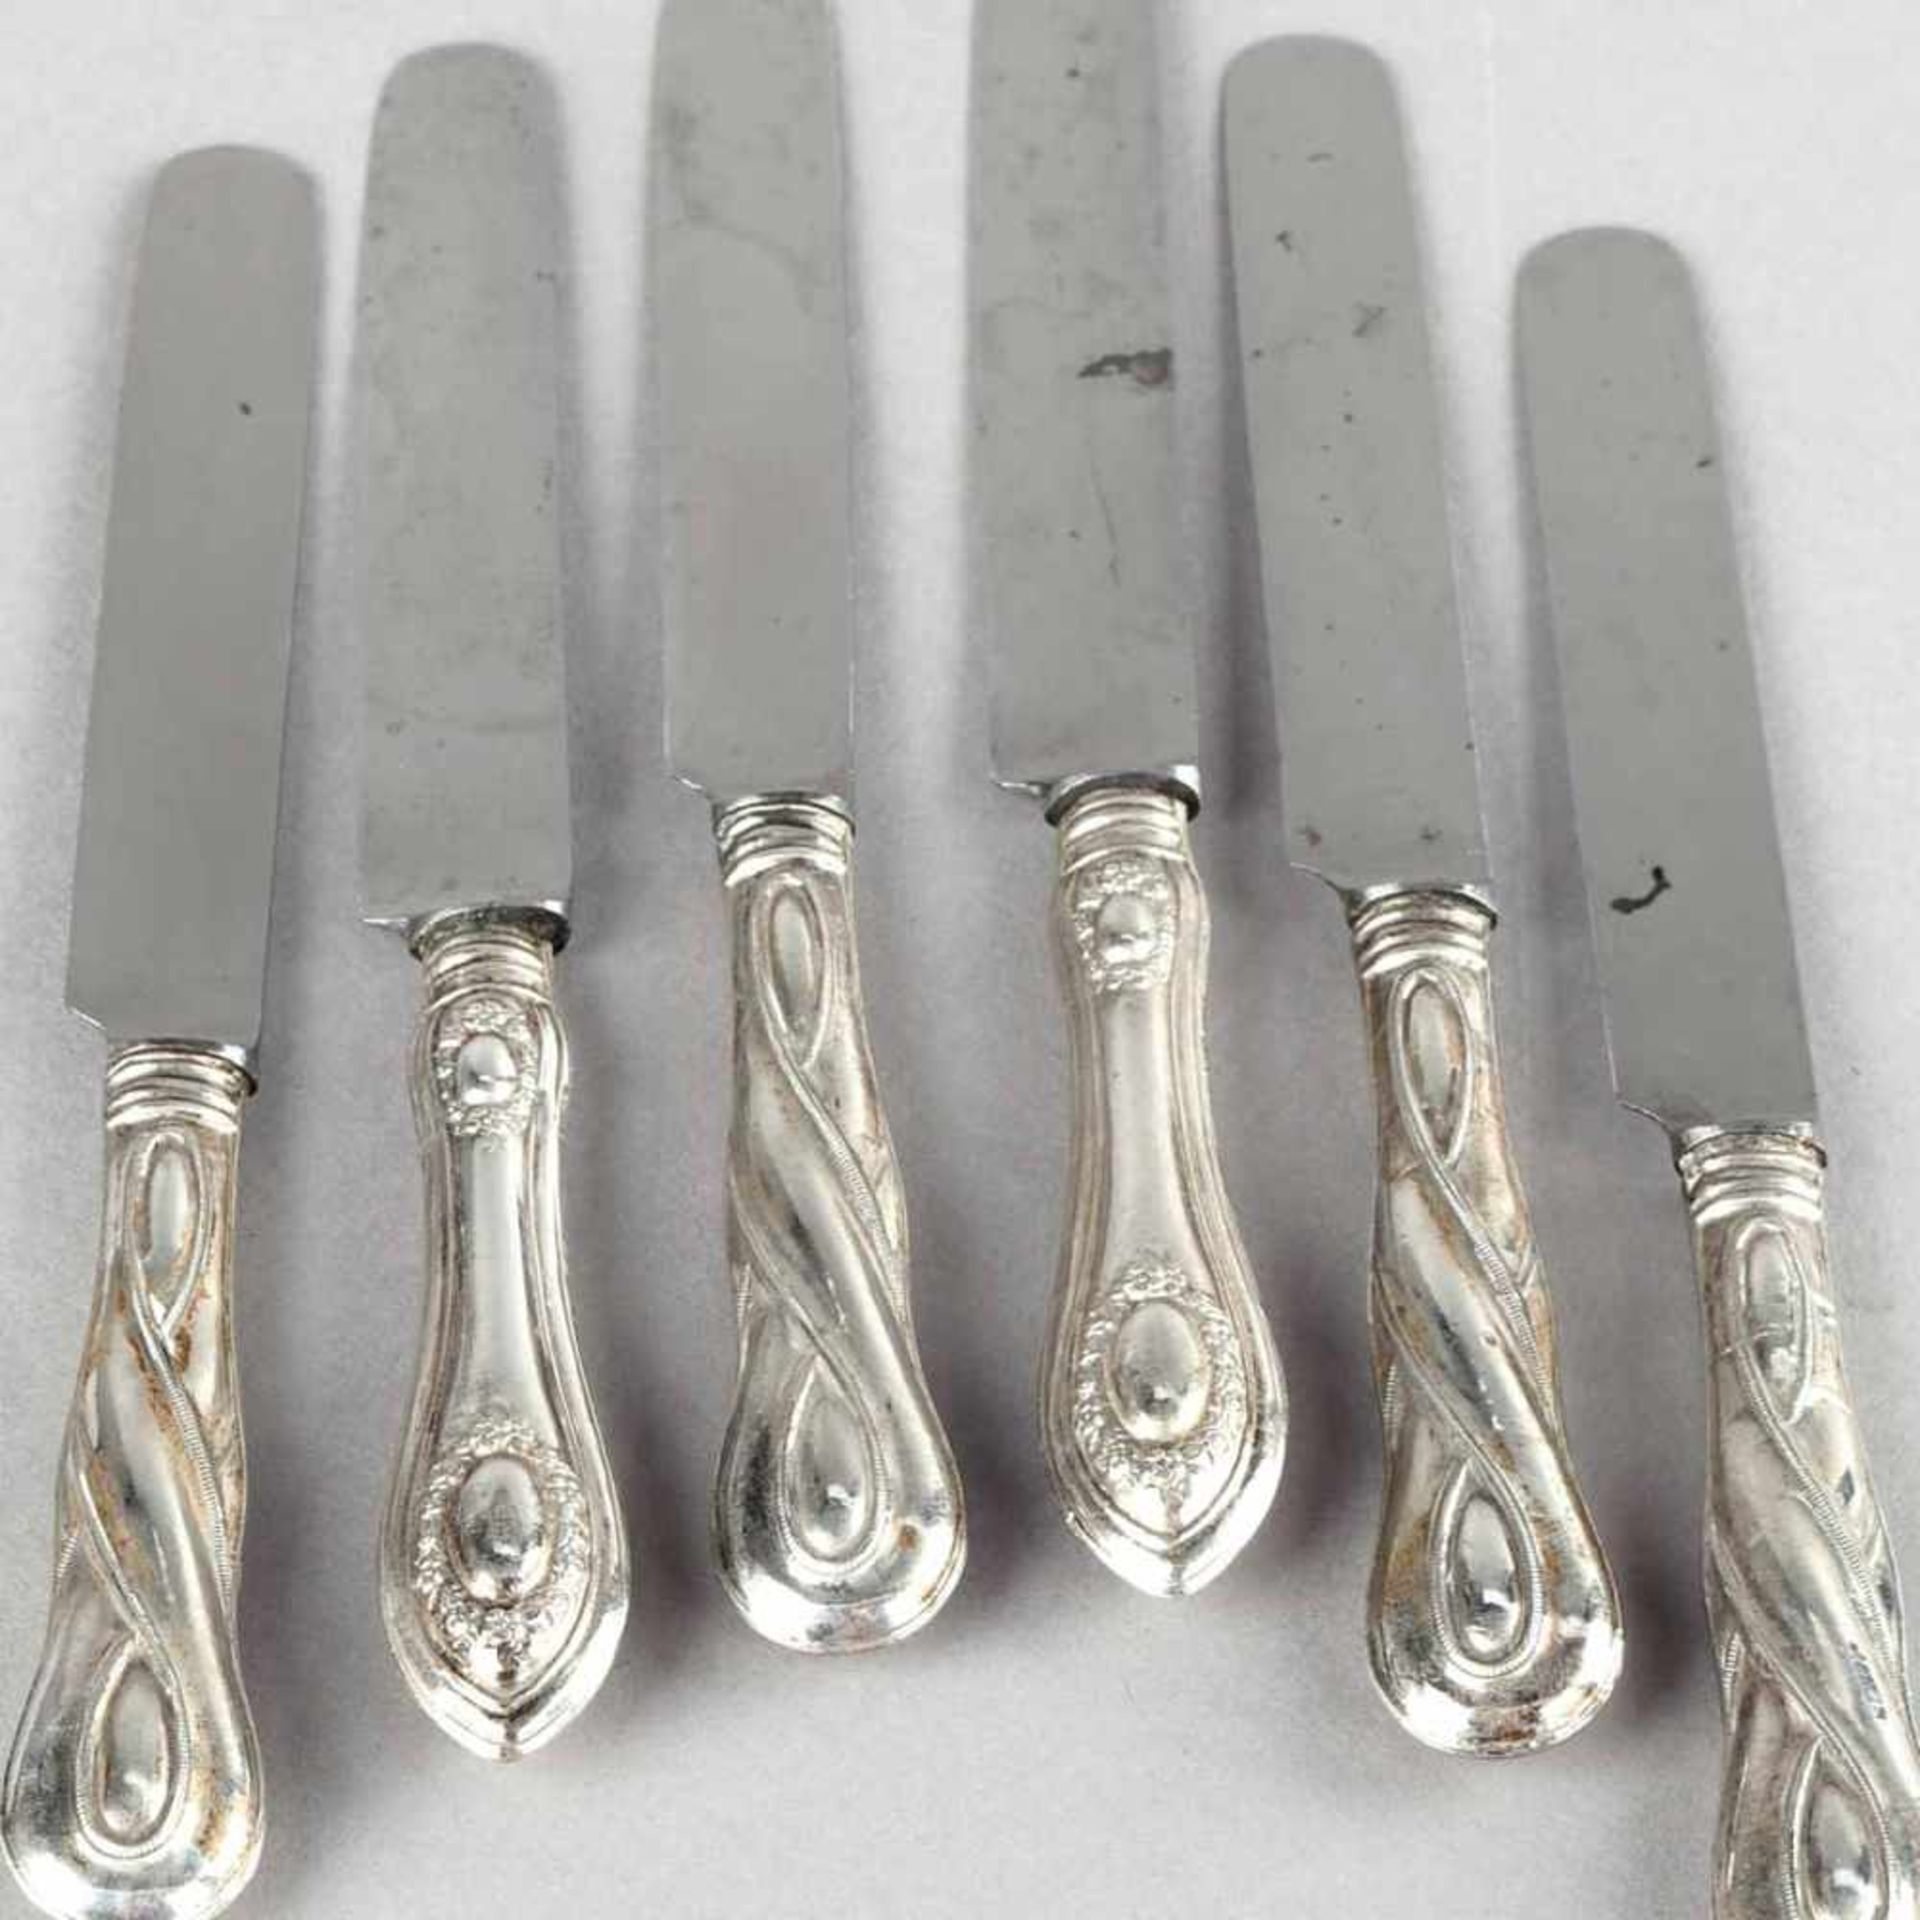 Zwei Sätze Vorspeisenmesser Silber geprüft, ungemarkt, je 6 Messer mit bauchigen Griffen und